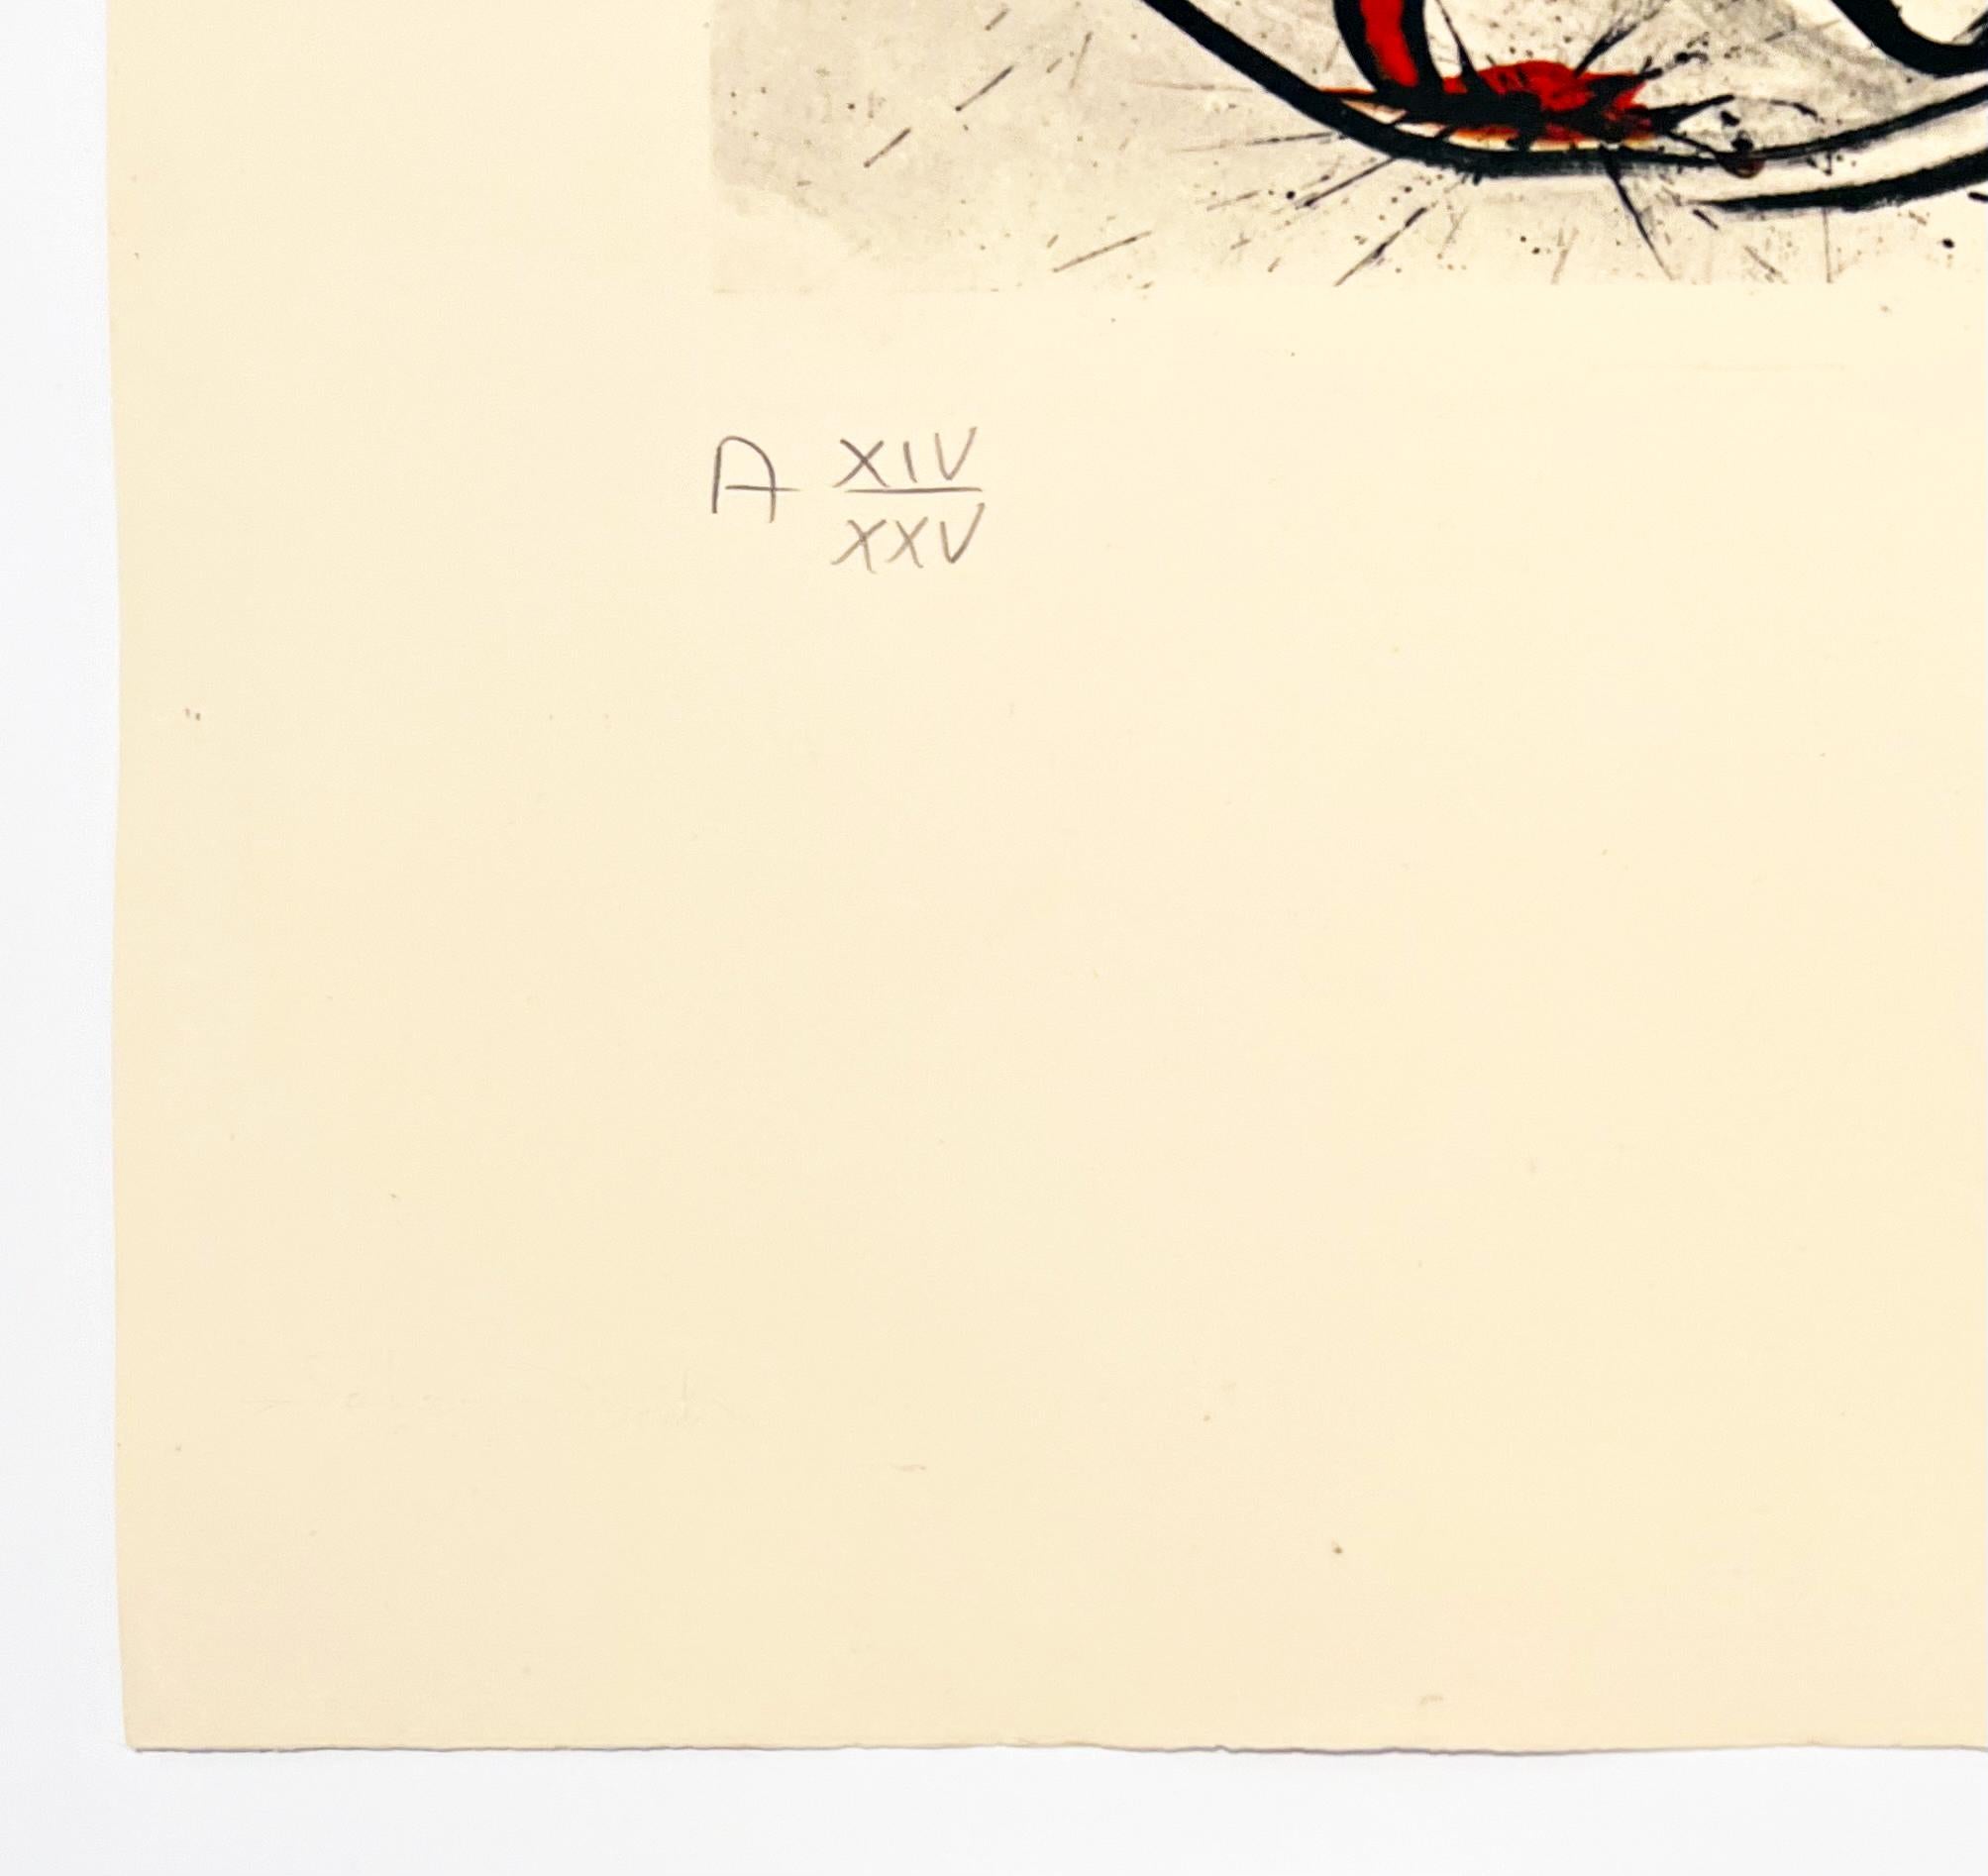 Artistics : Salvador Dali
Titre : Ange du DADA Surréalisme
Portfolio : Mémoires du surréalisme
Supports : Gravure et photolithographie
Date : 1971
Édition : AP XIV/XXV (épreuve d'artiste 14/25, en dehors de l'édition de 175)
Taille de la feuille :